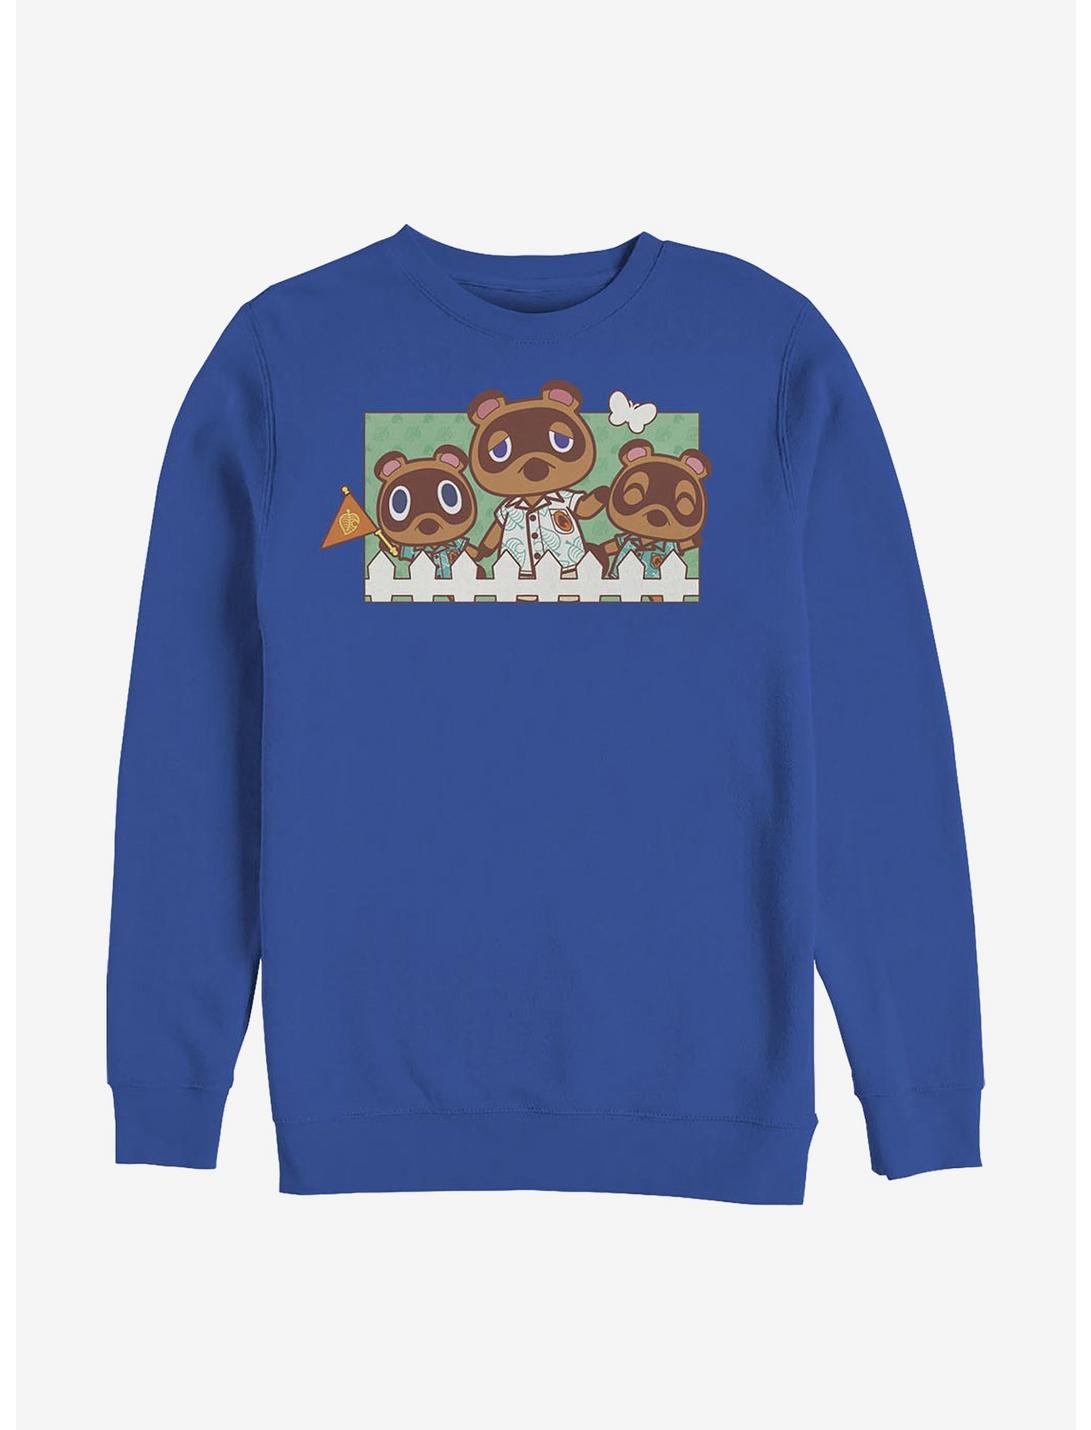 Nintendo Animal Crossing Nook Family Crew Sweatshirt, ROYAL, hi-res